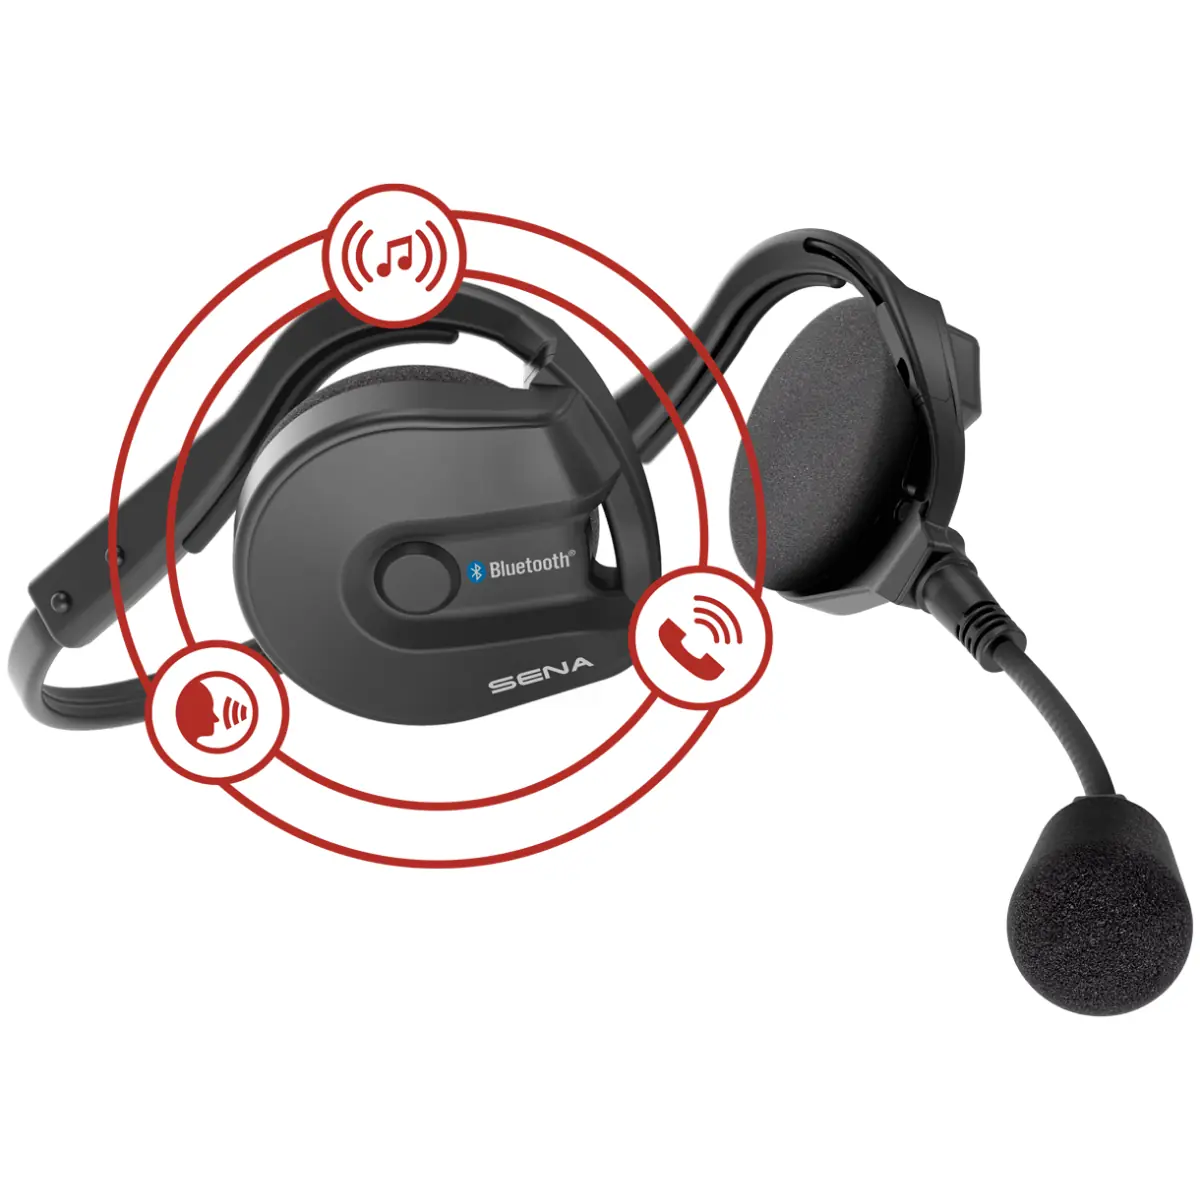 Sena  Boom uitvouwen - Headset  Bluetooth nekband - Intercom